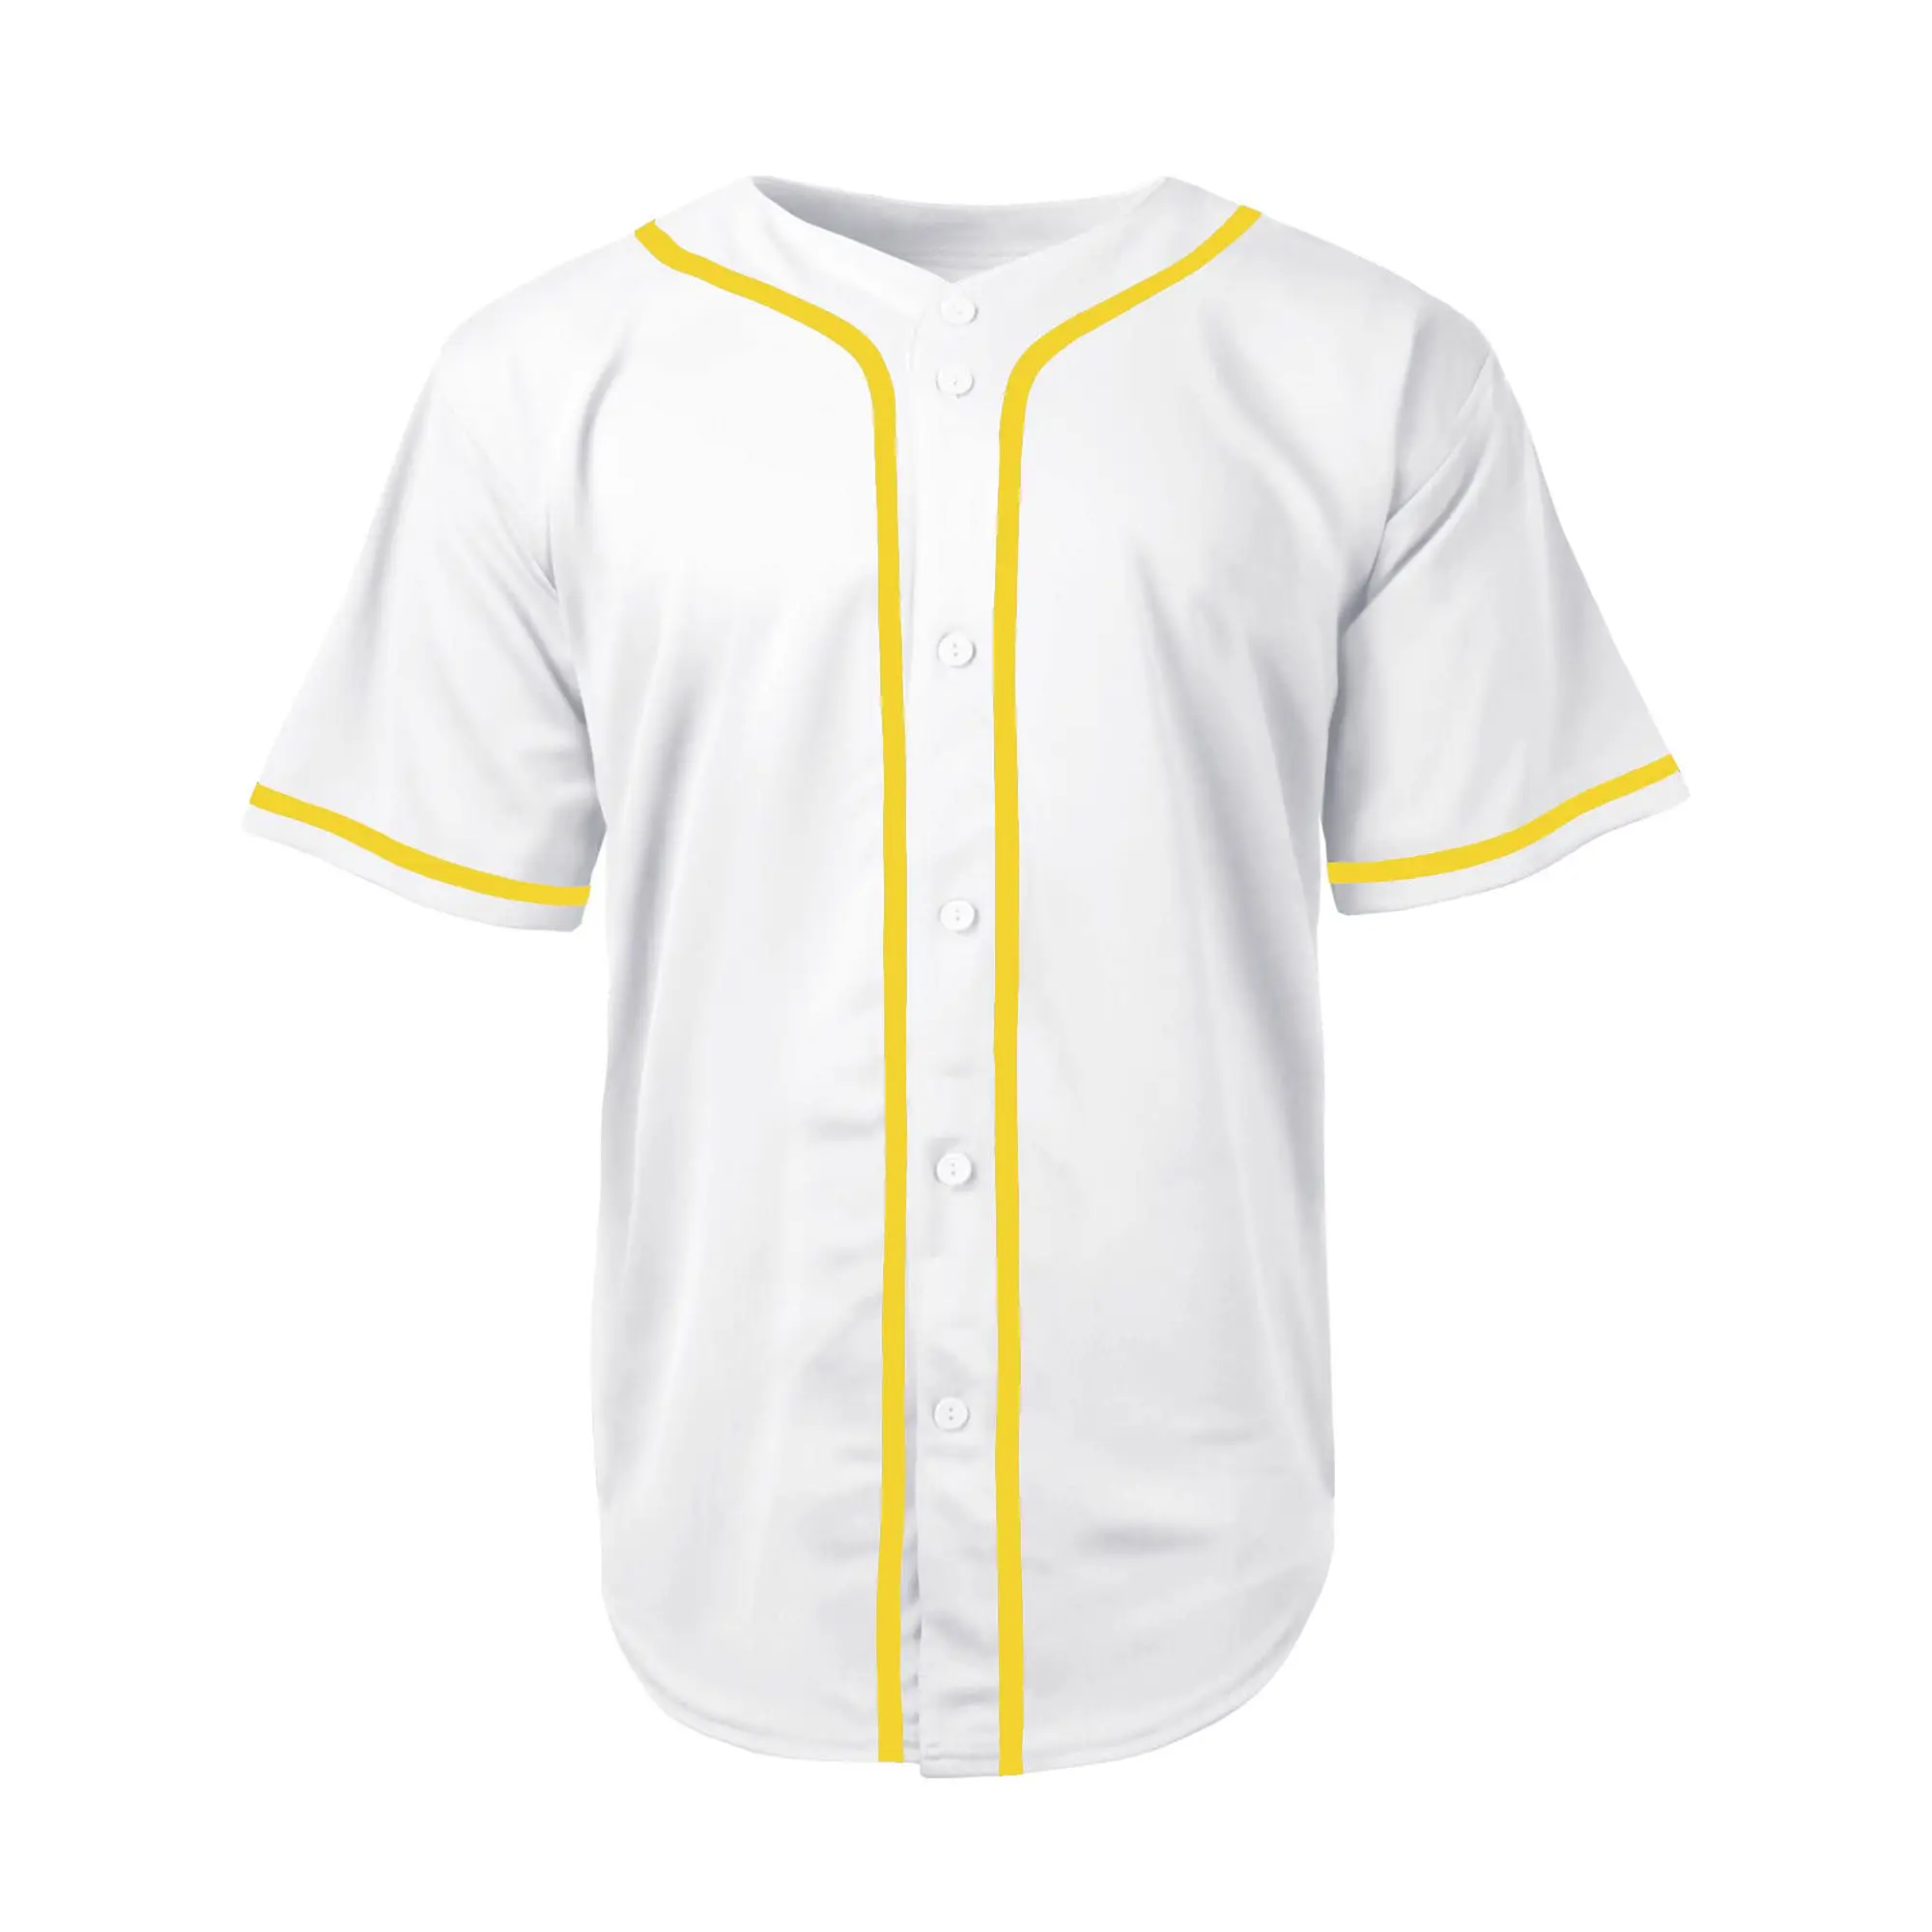 Camisetas de béisbol de alta calidad OEM con nombre personalizado y sin en tela de poliéster 100% camisetas deportivas personalizadas